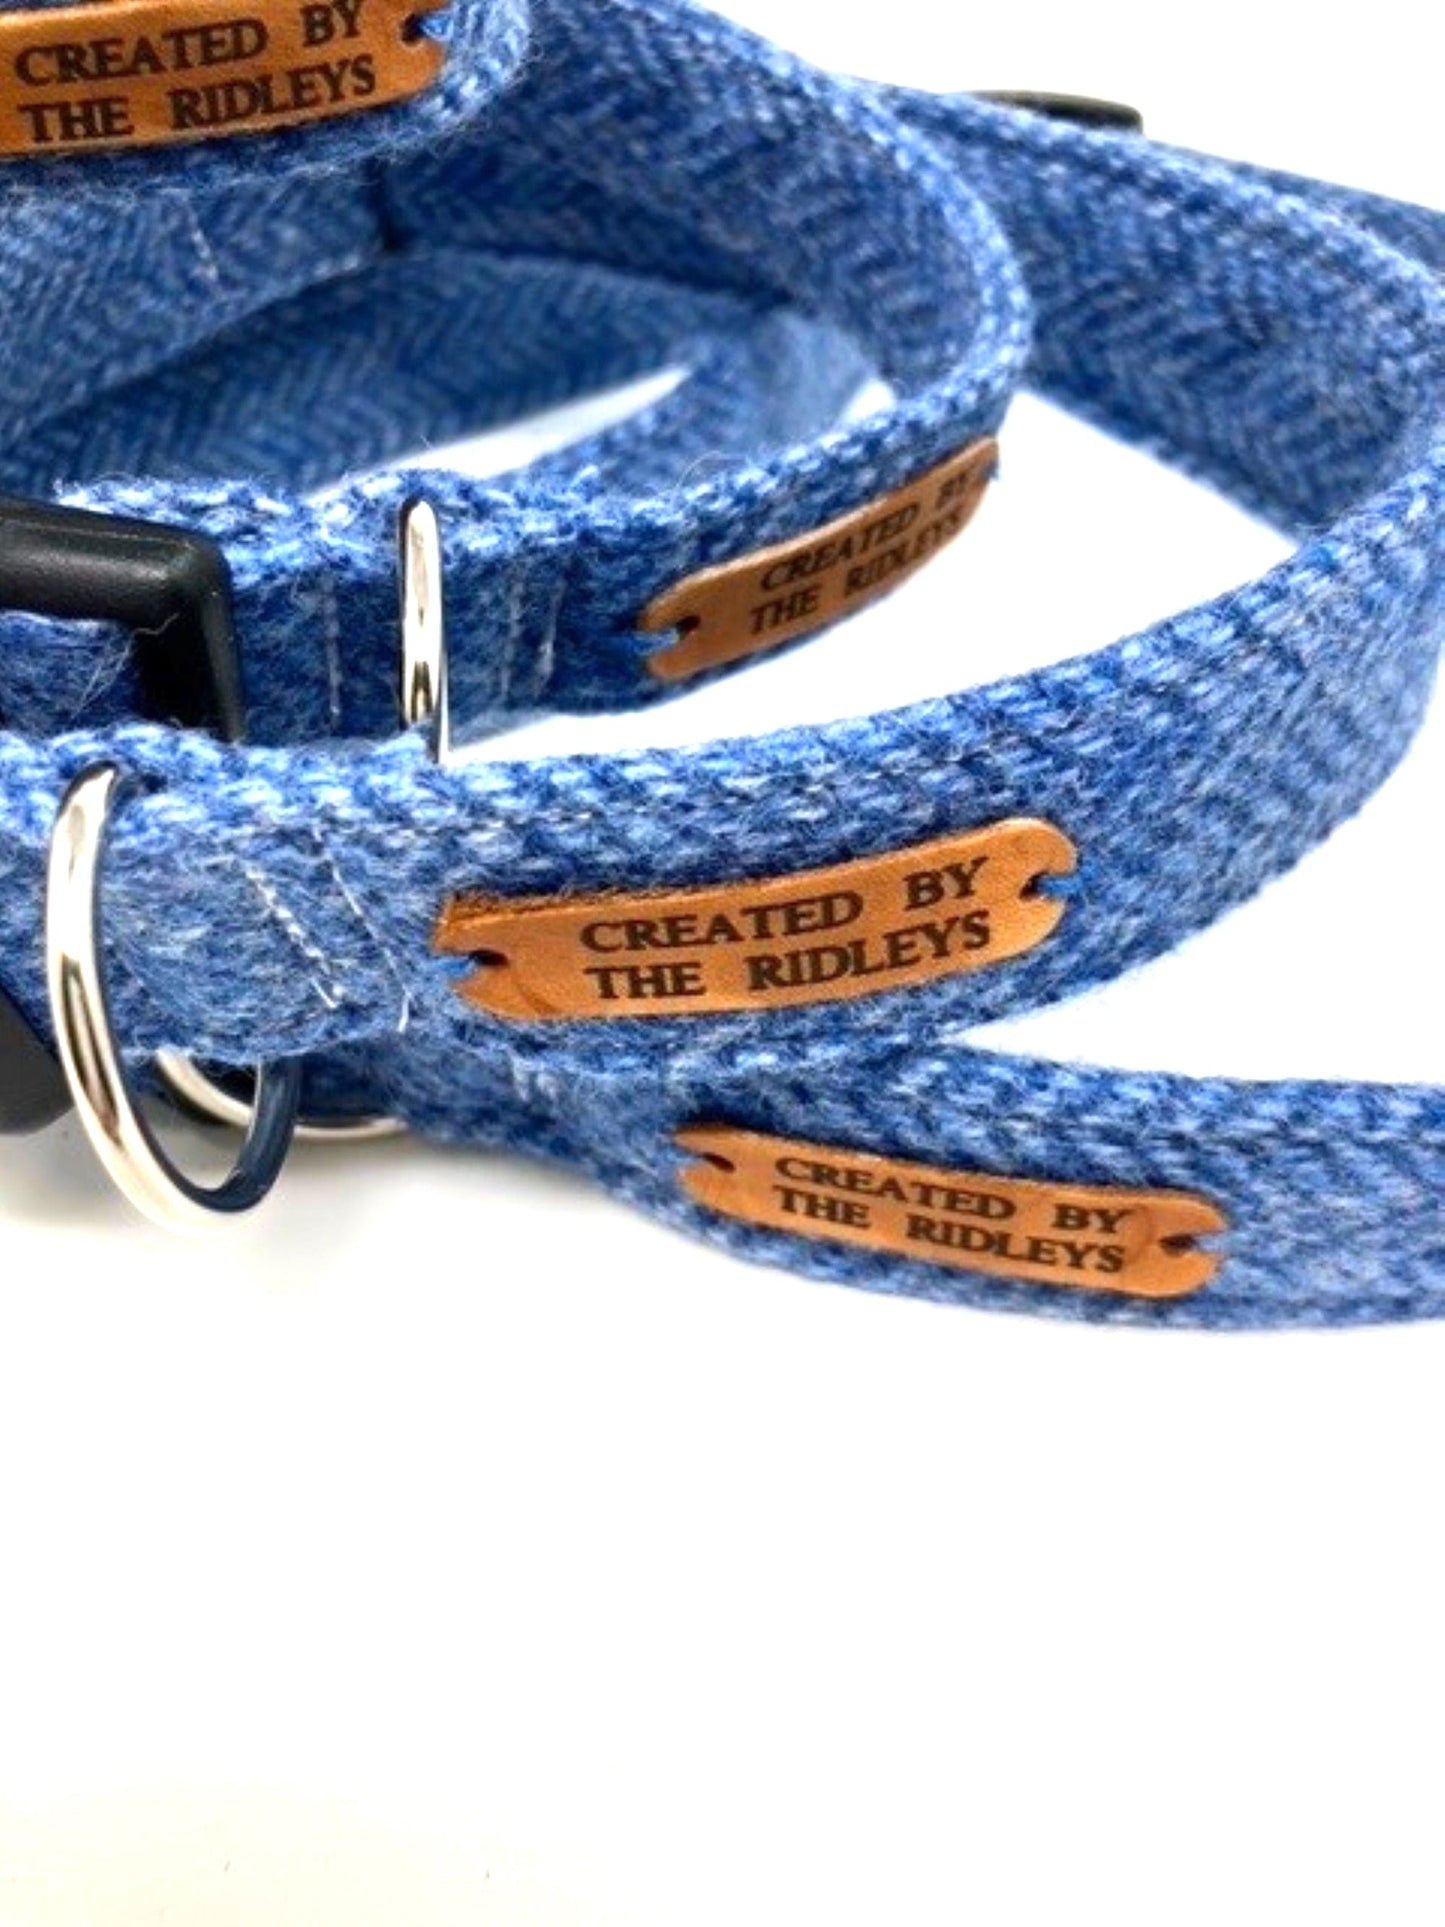 Tweed Dog Bow Tie - Blue Herringbone